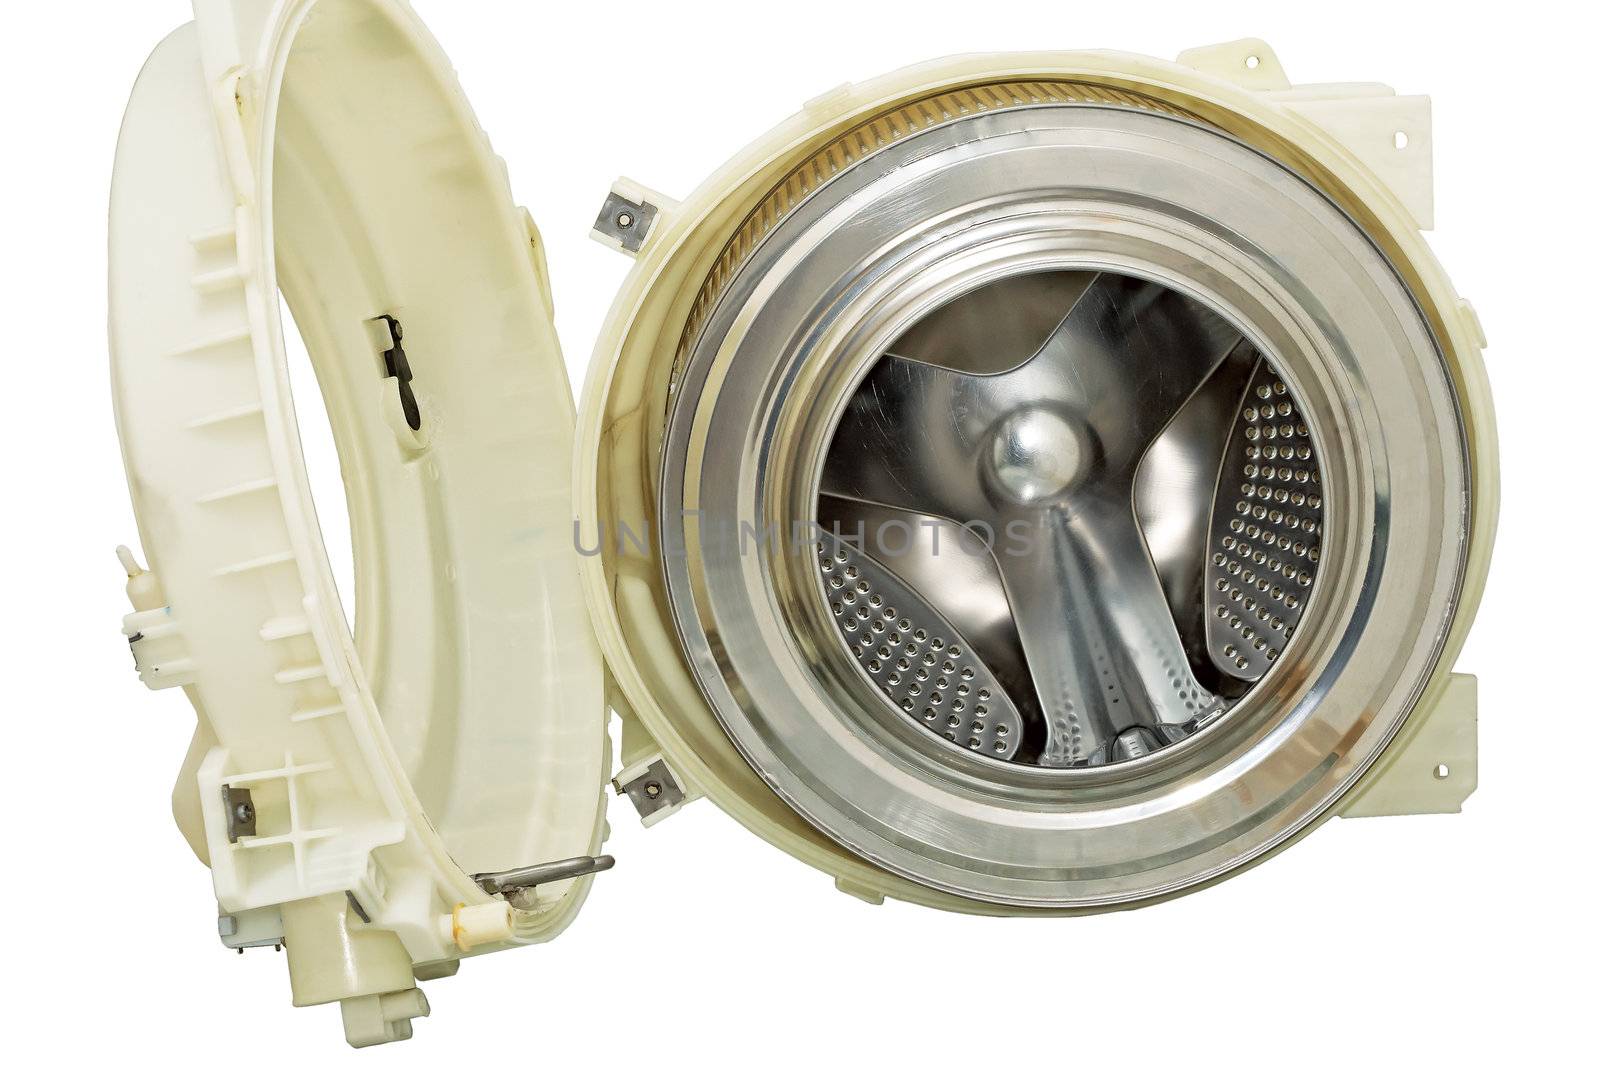 Steel drum of a washing machine. by ekipaj